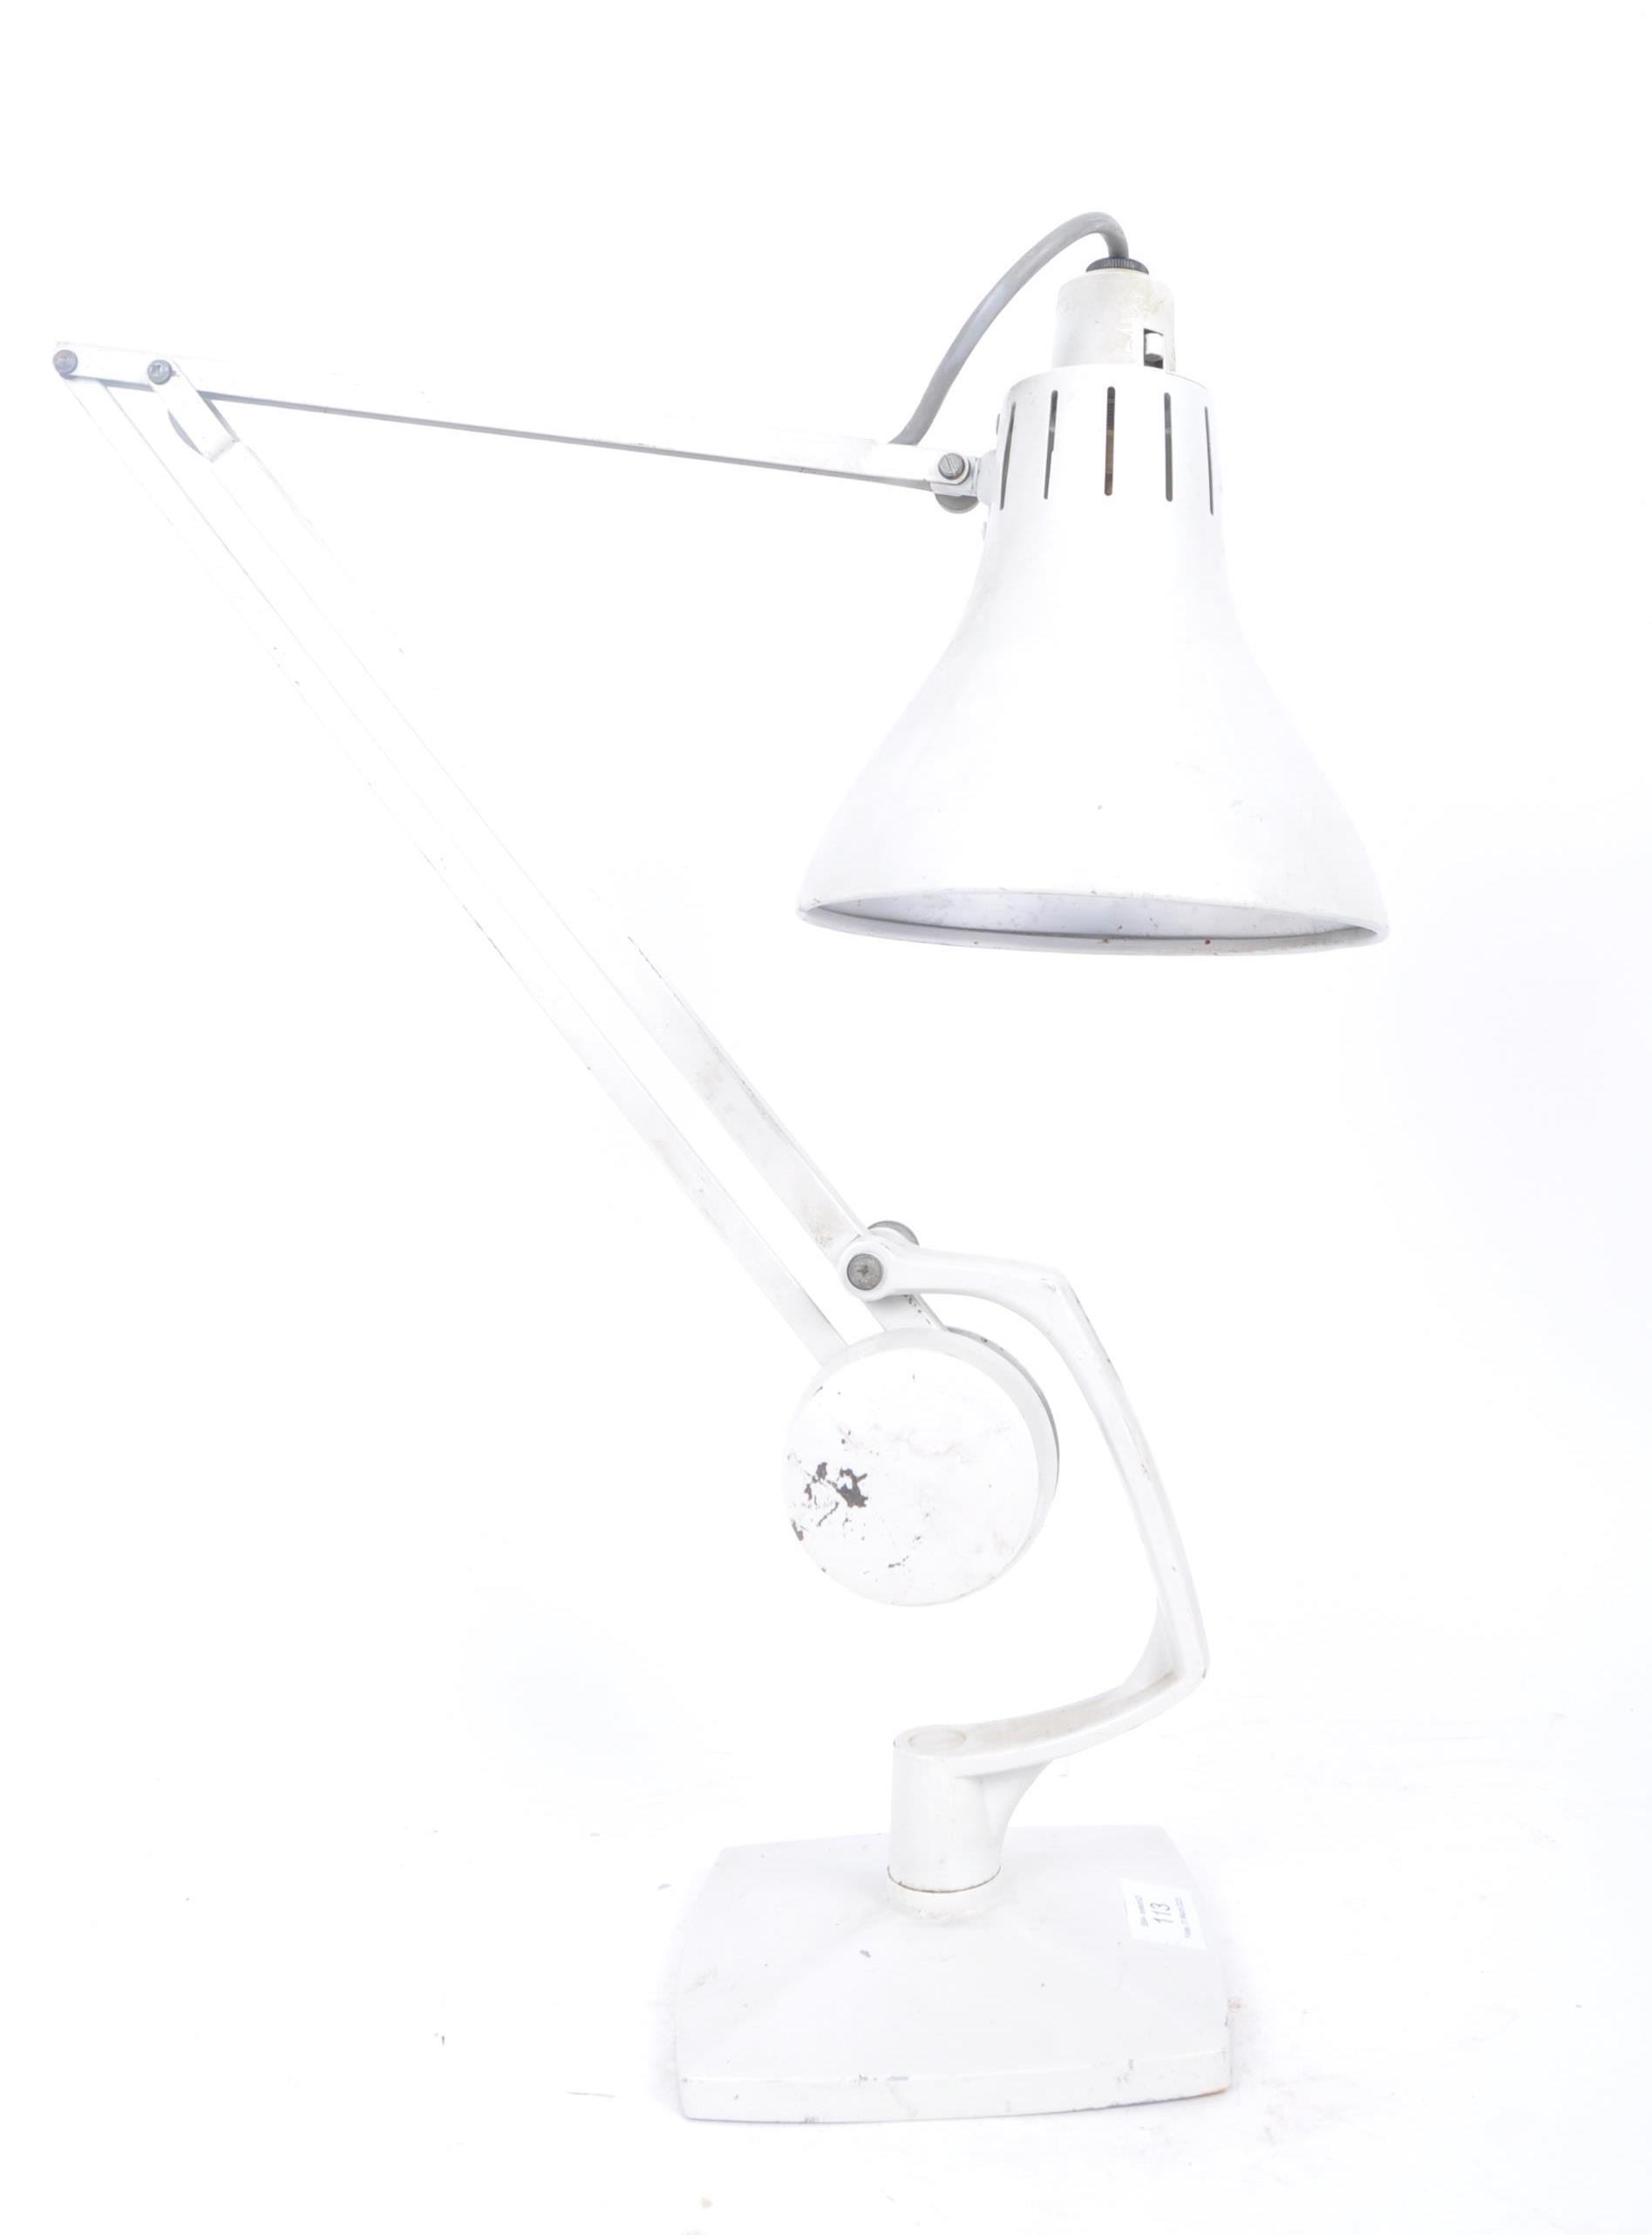 HADRILL & HORSTMANN - MID CENTURY ANGLEPOISE DESK LAMP - Image 4 of 6